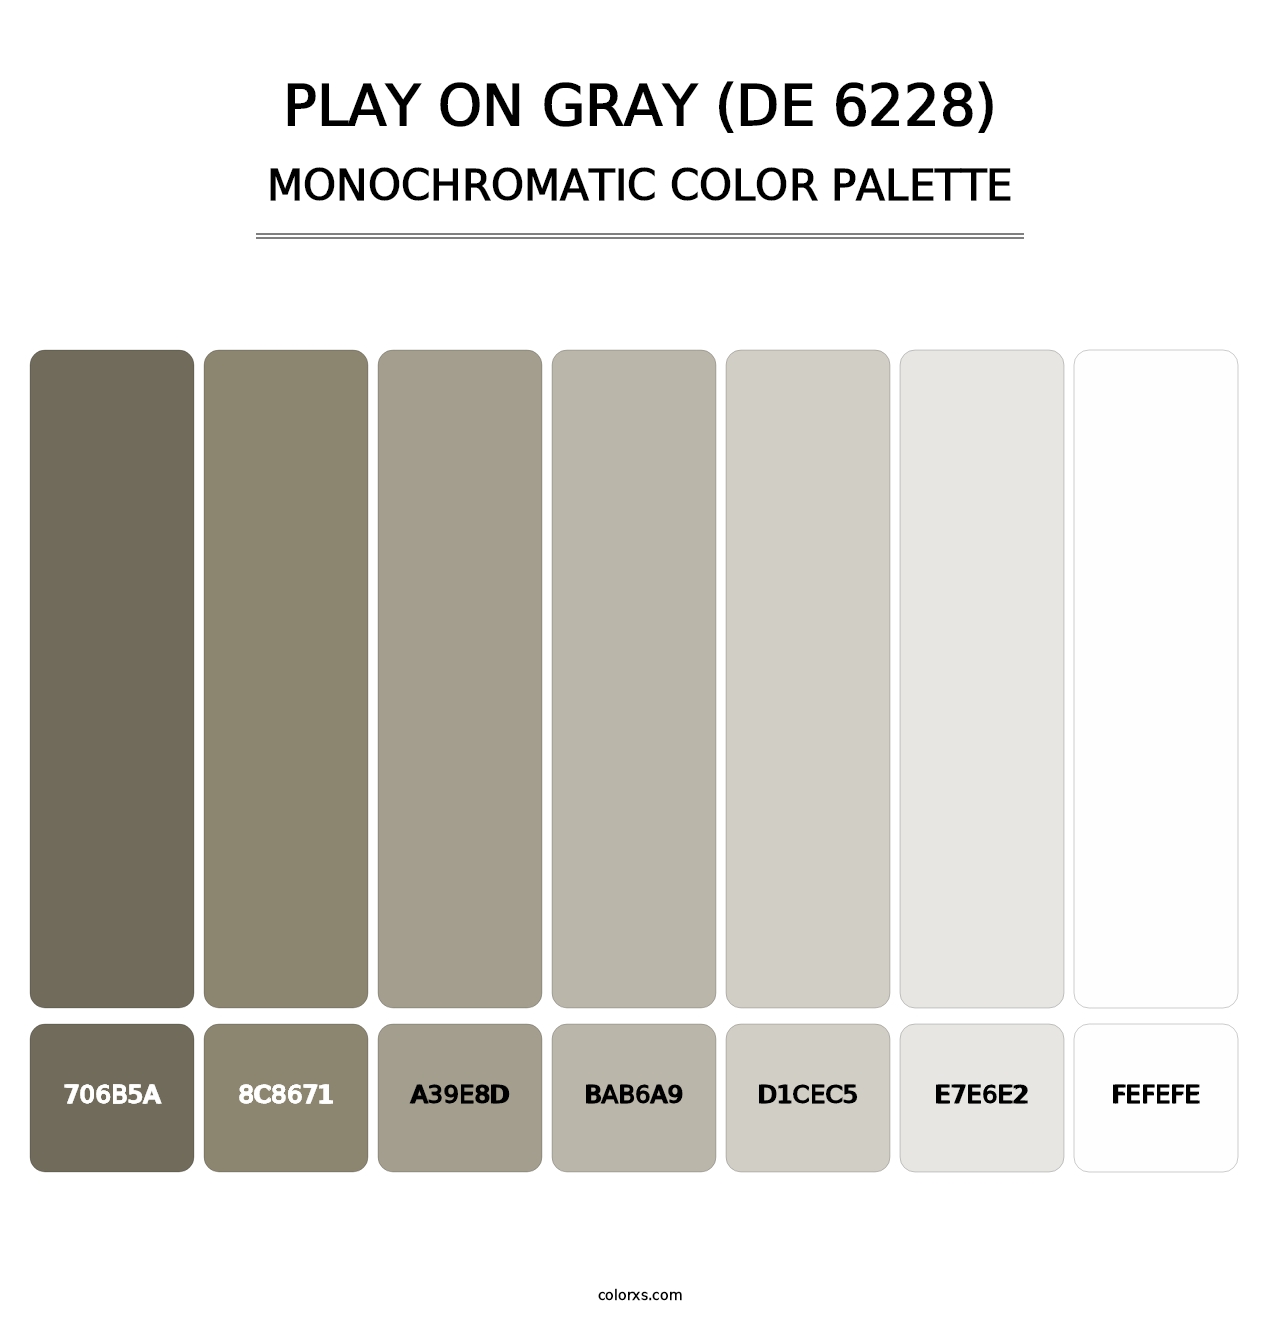 Play on Gray (DE 6228) - Monochromatic Color Palette